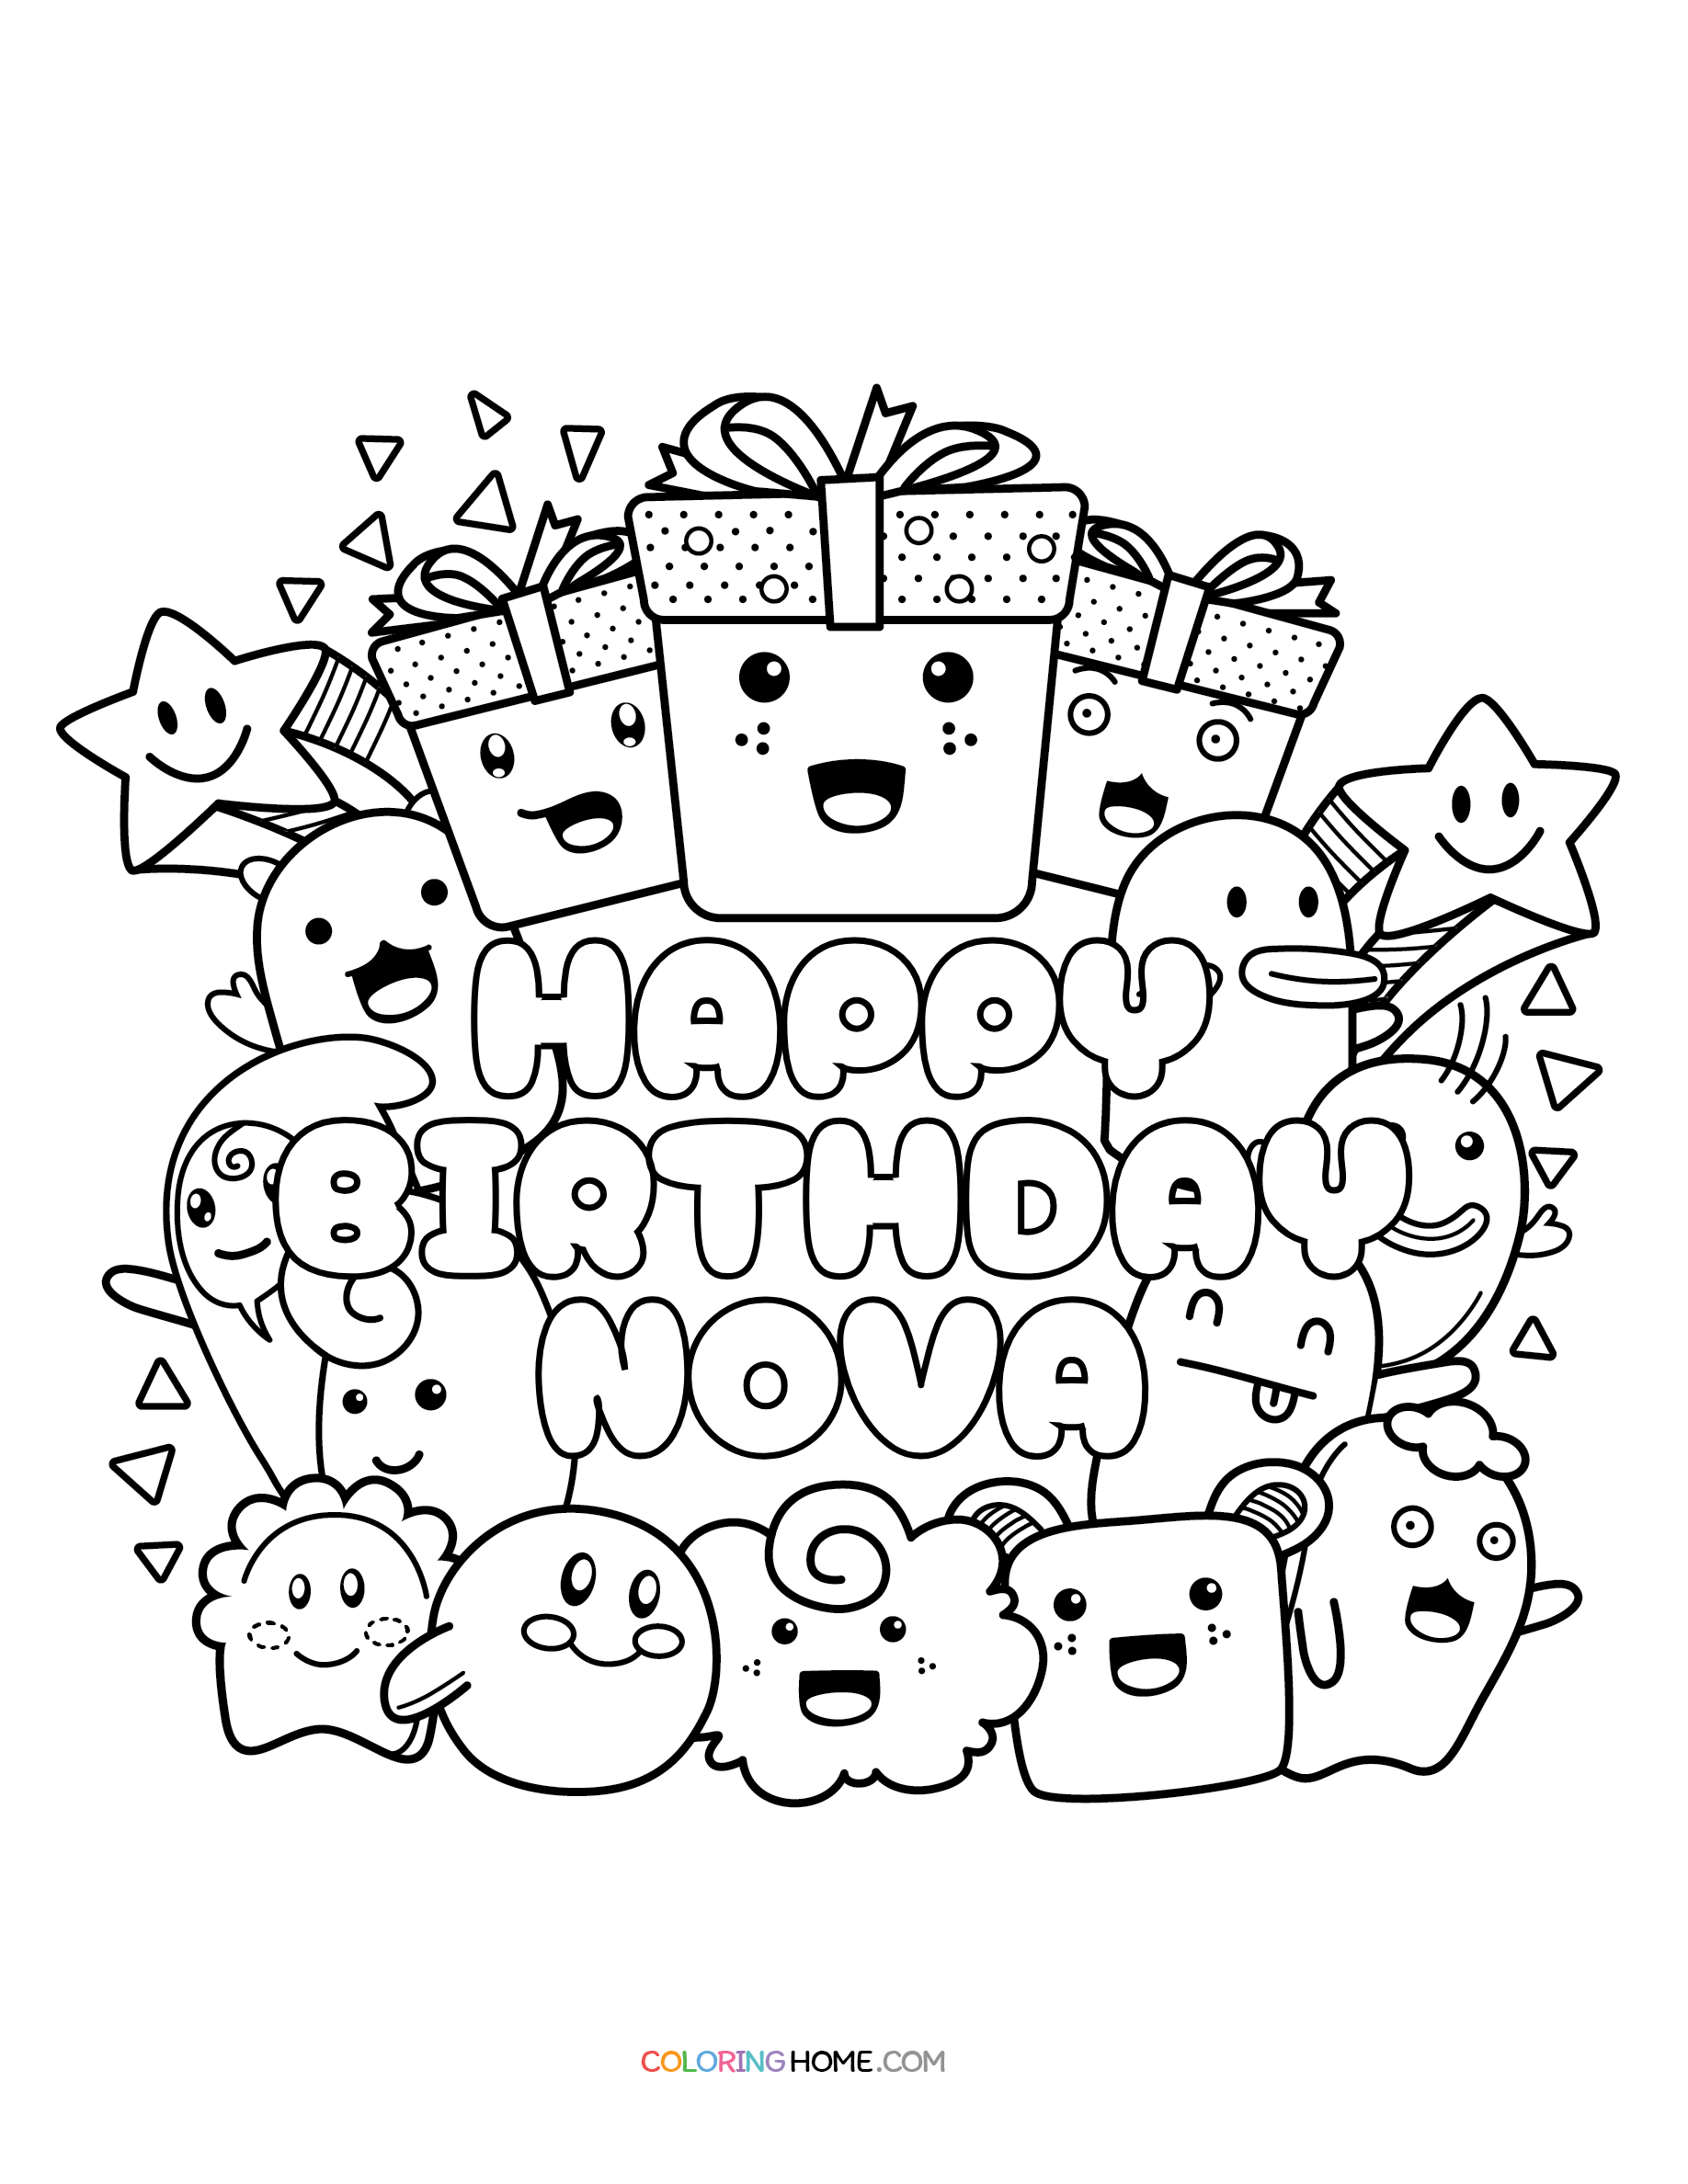 Happy Birthday Nova coloring page